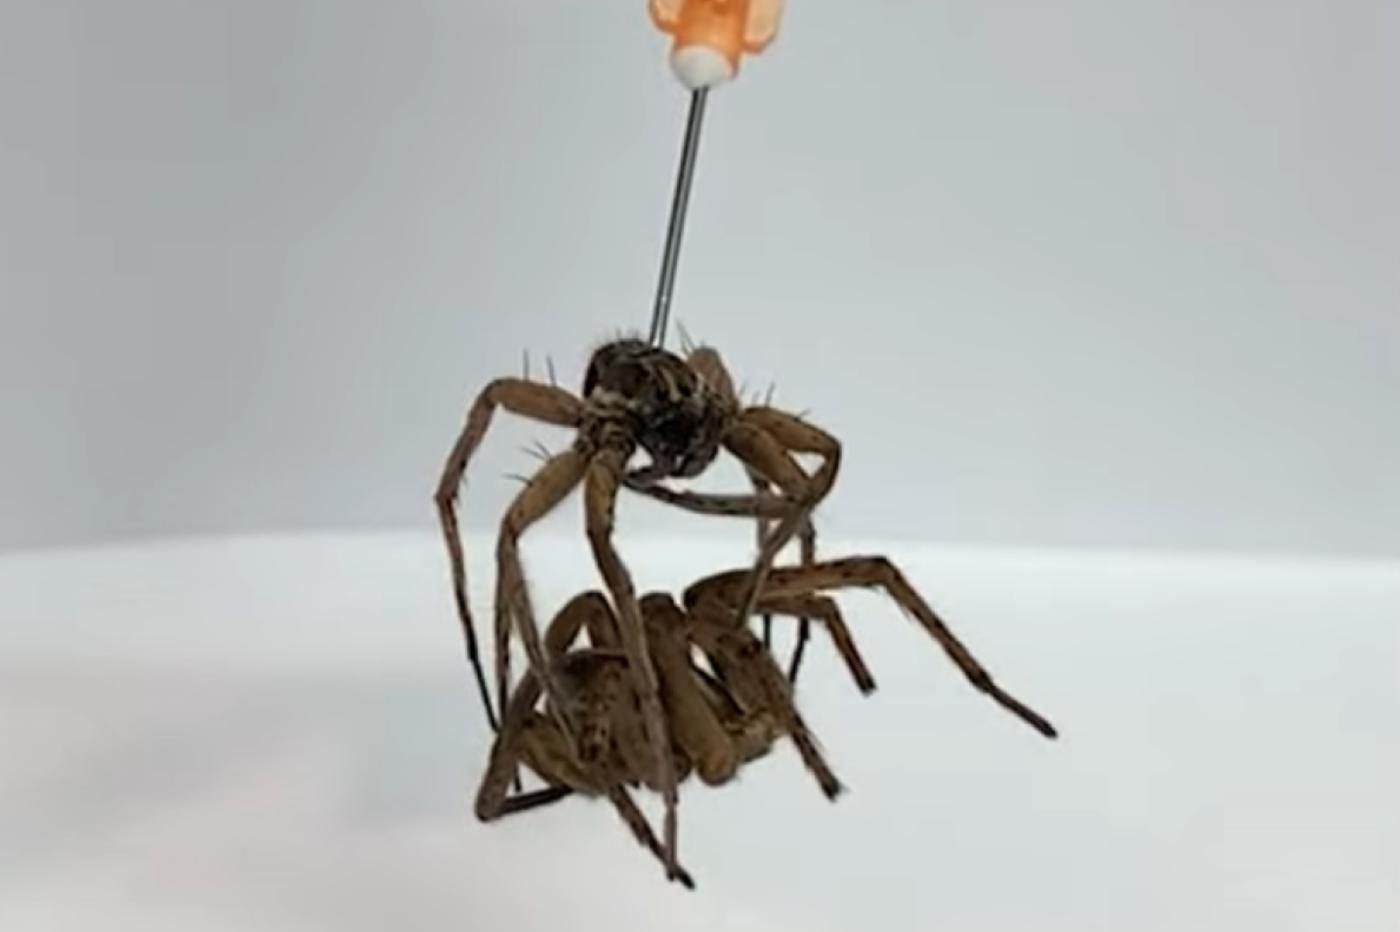 Des araignées mortes transformées en pinces robotiques